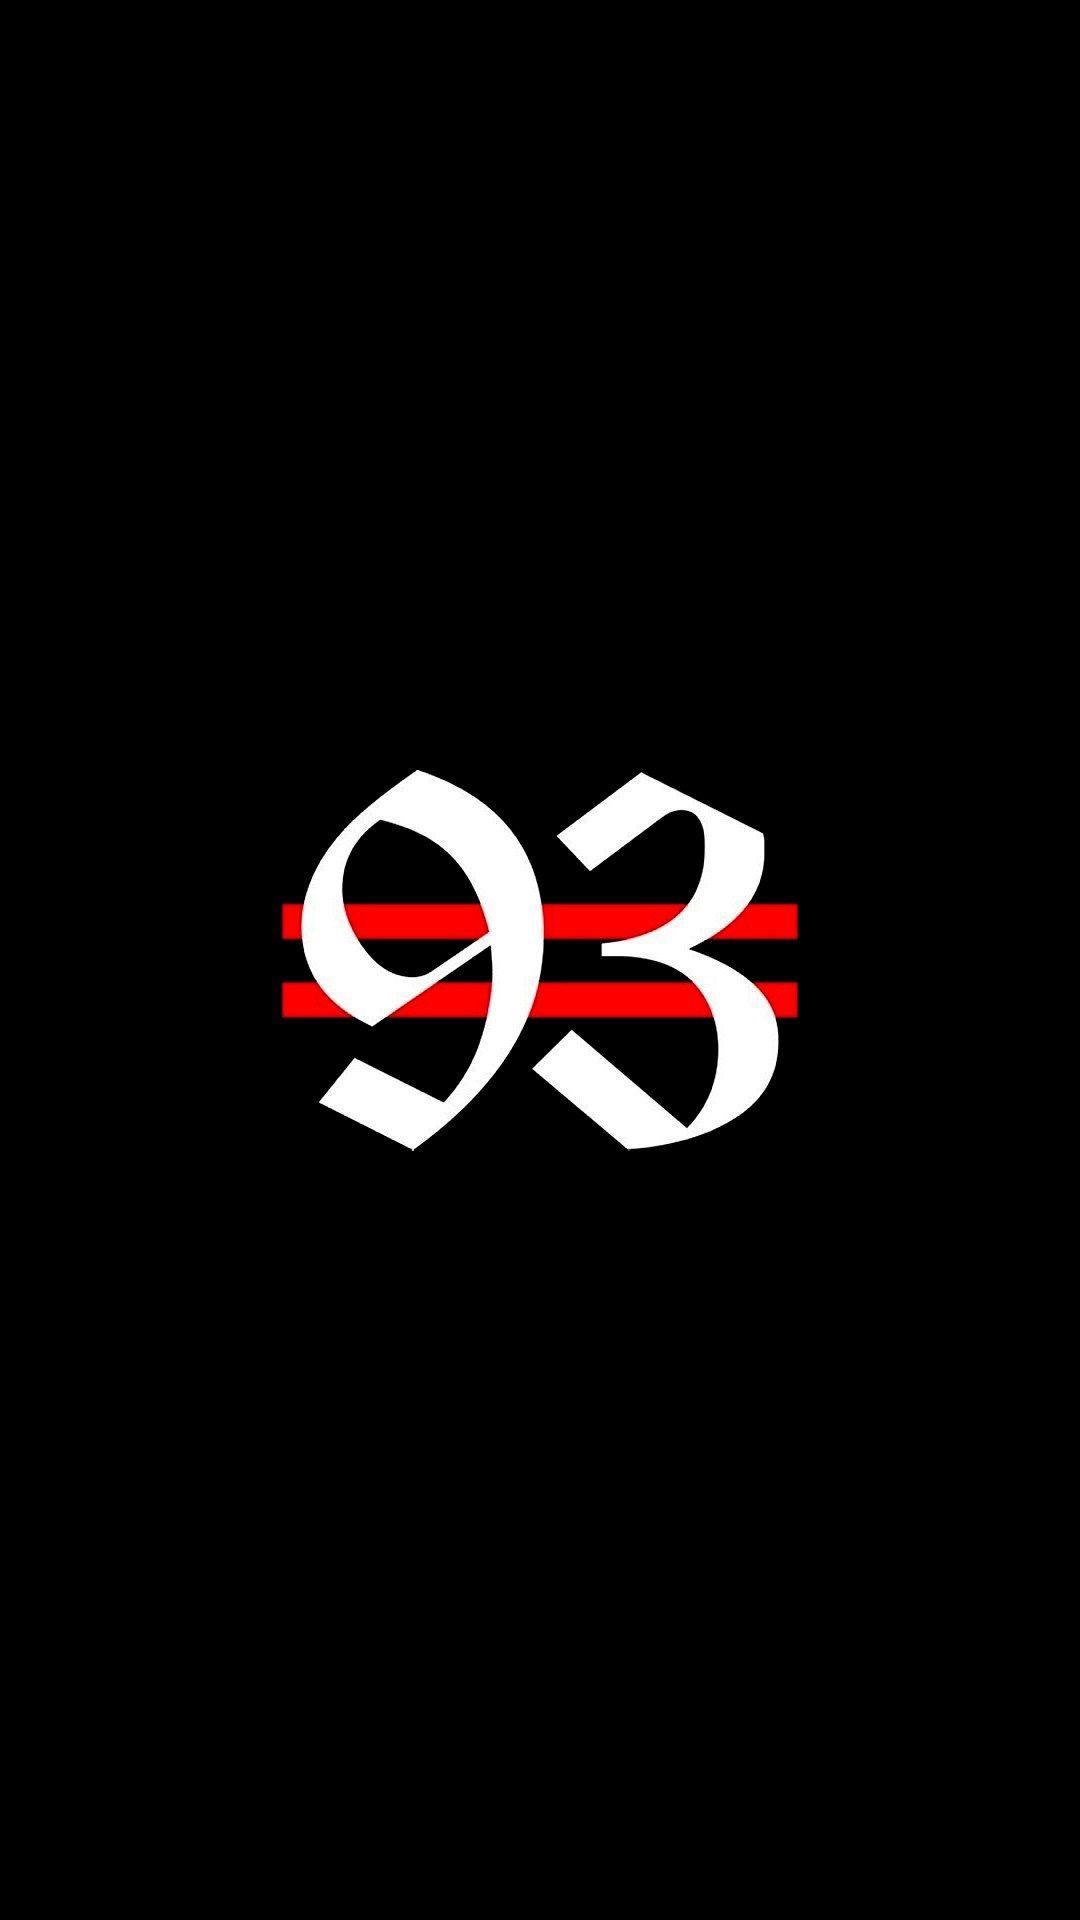 Got7 Logo